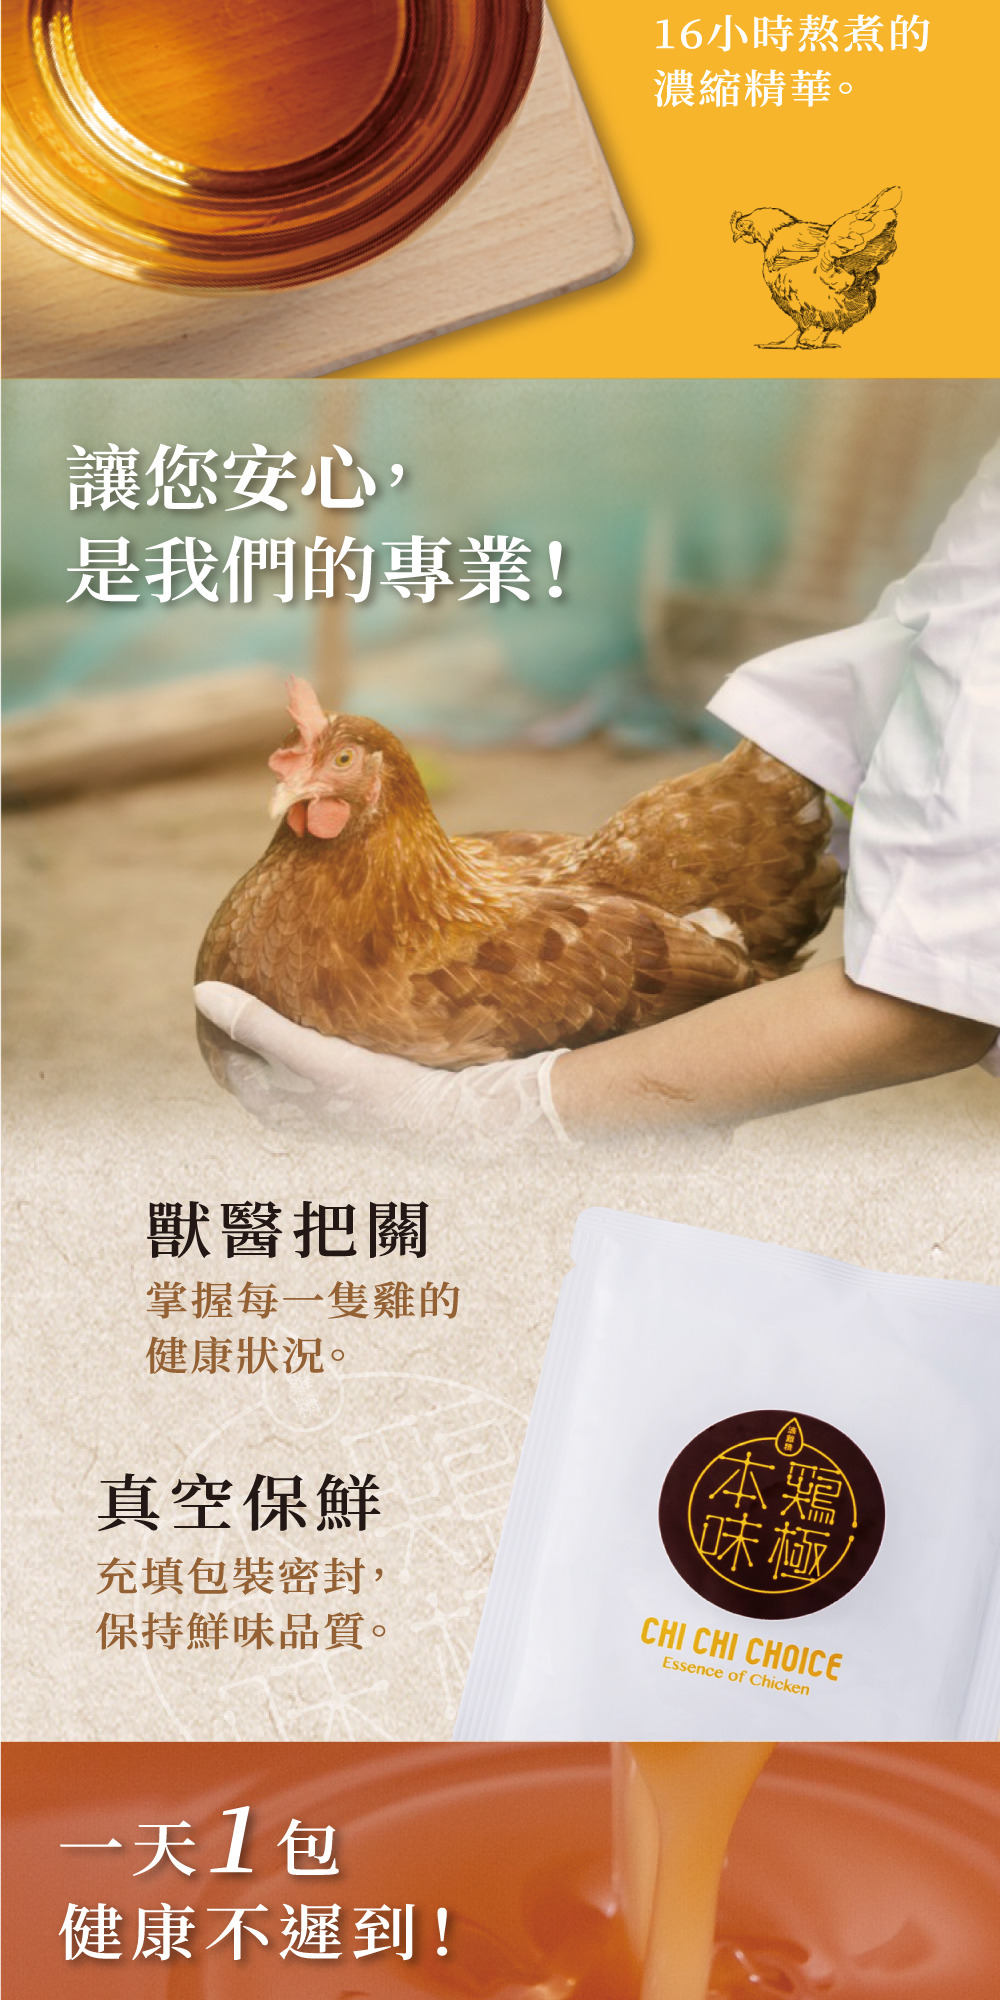 雞極本味-常溫鮮萃滴魚精(7入/盒)